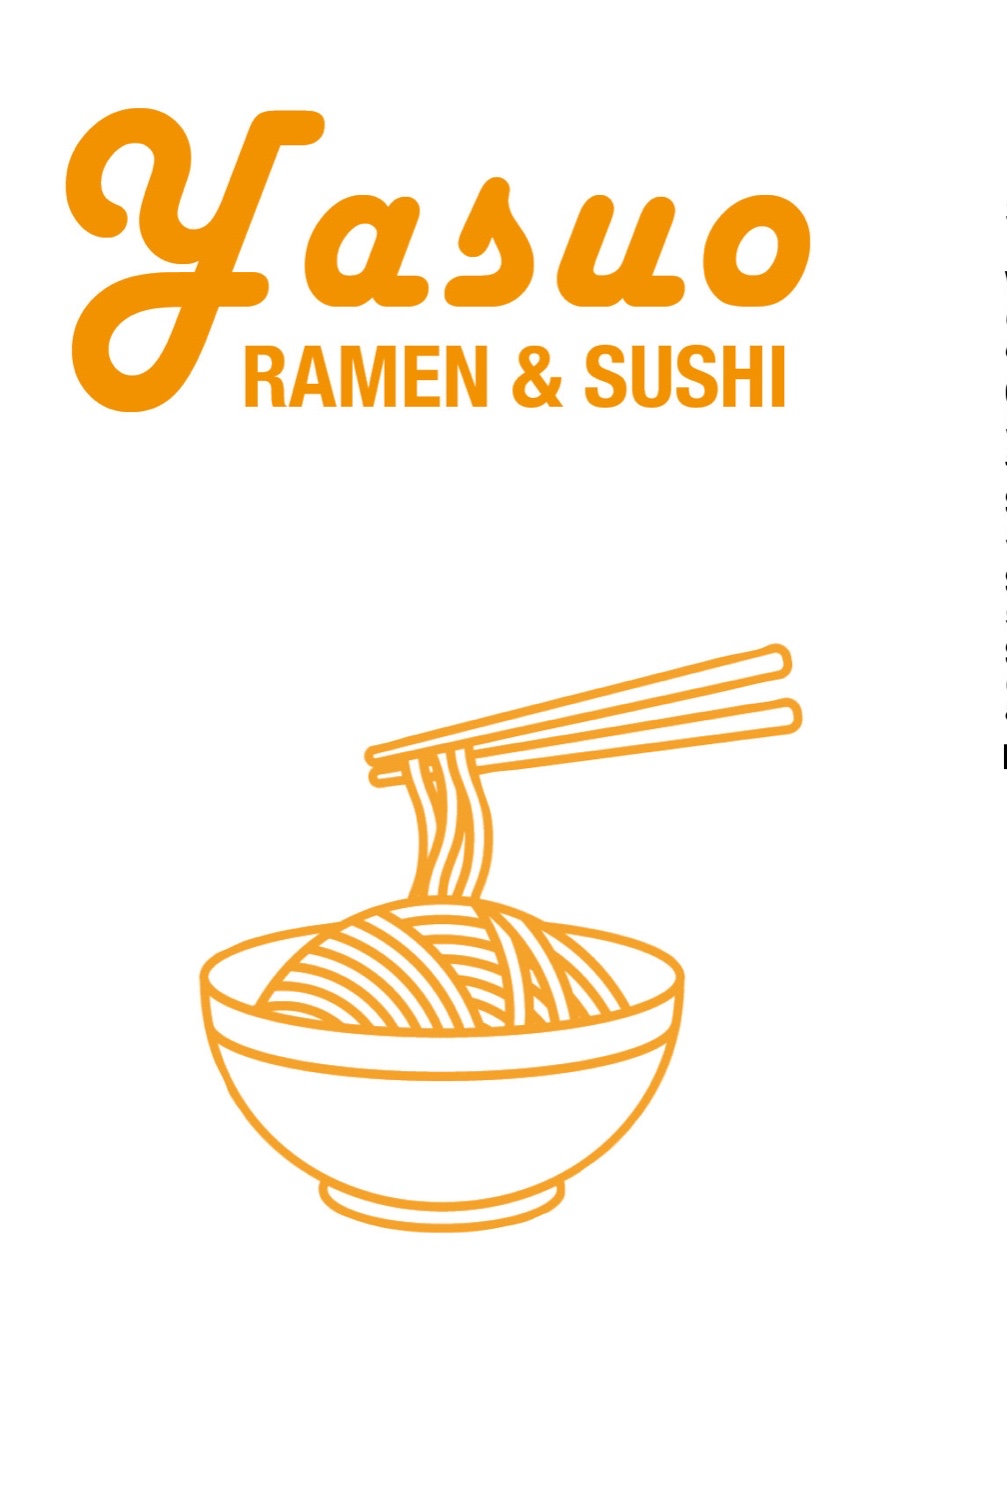 Yasu o sushi